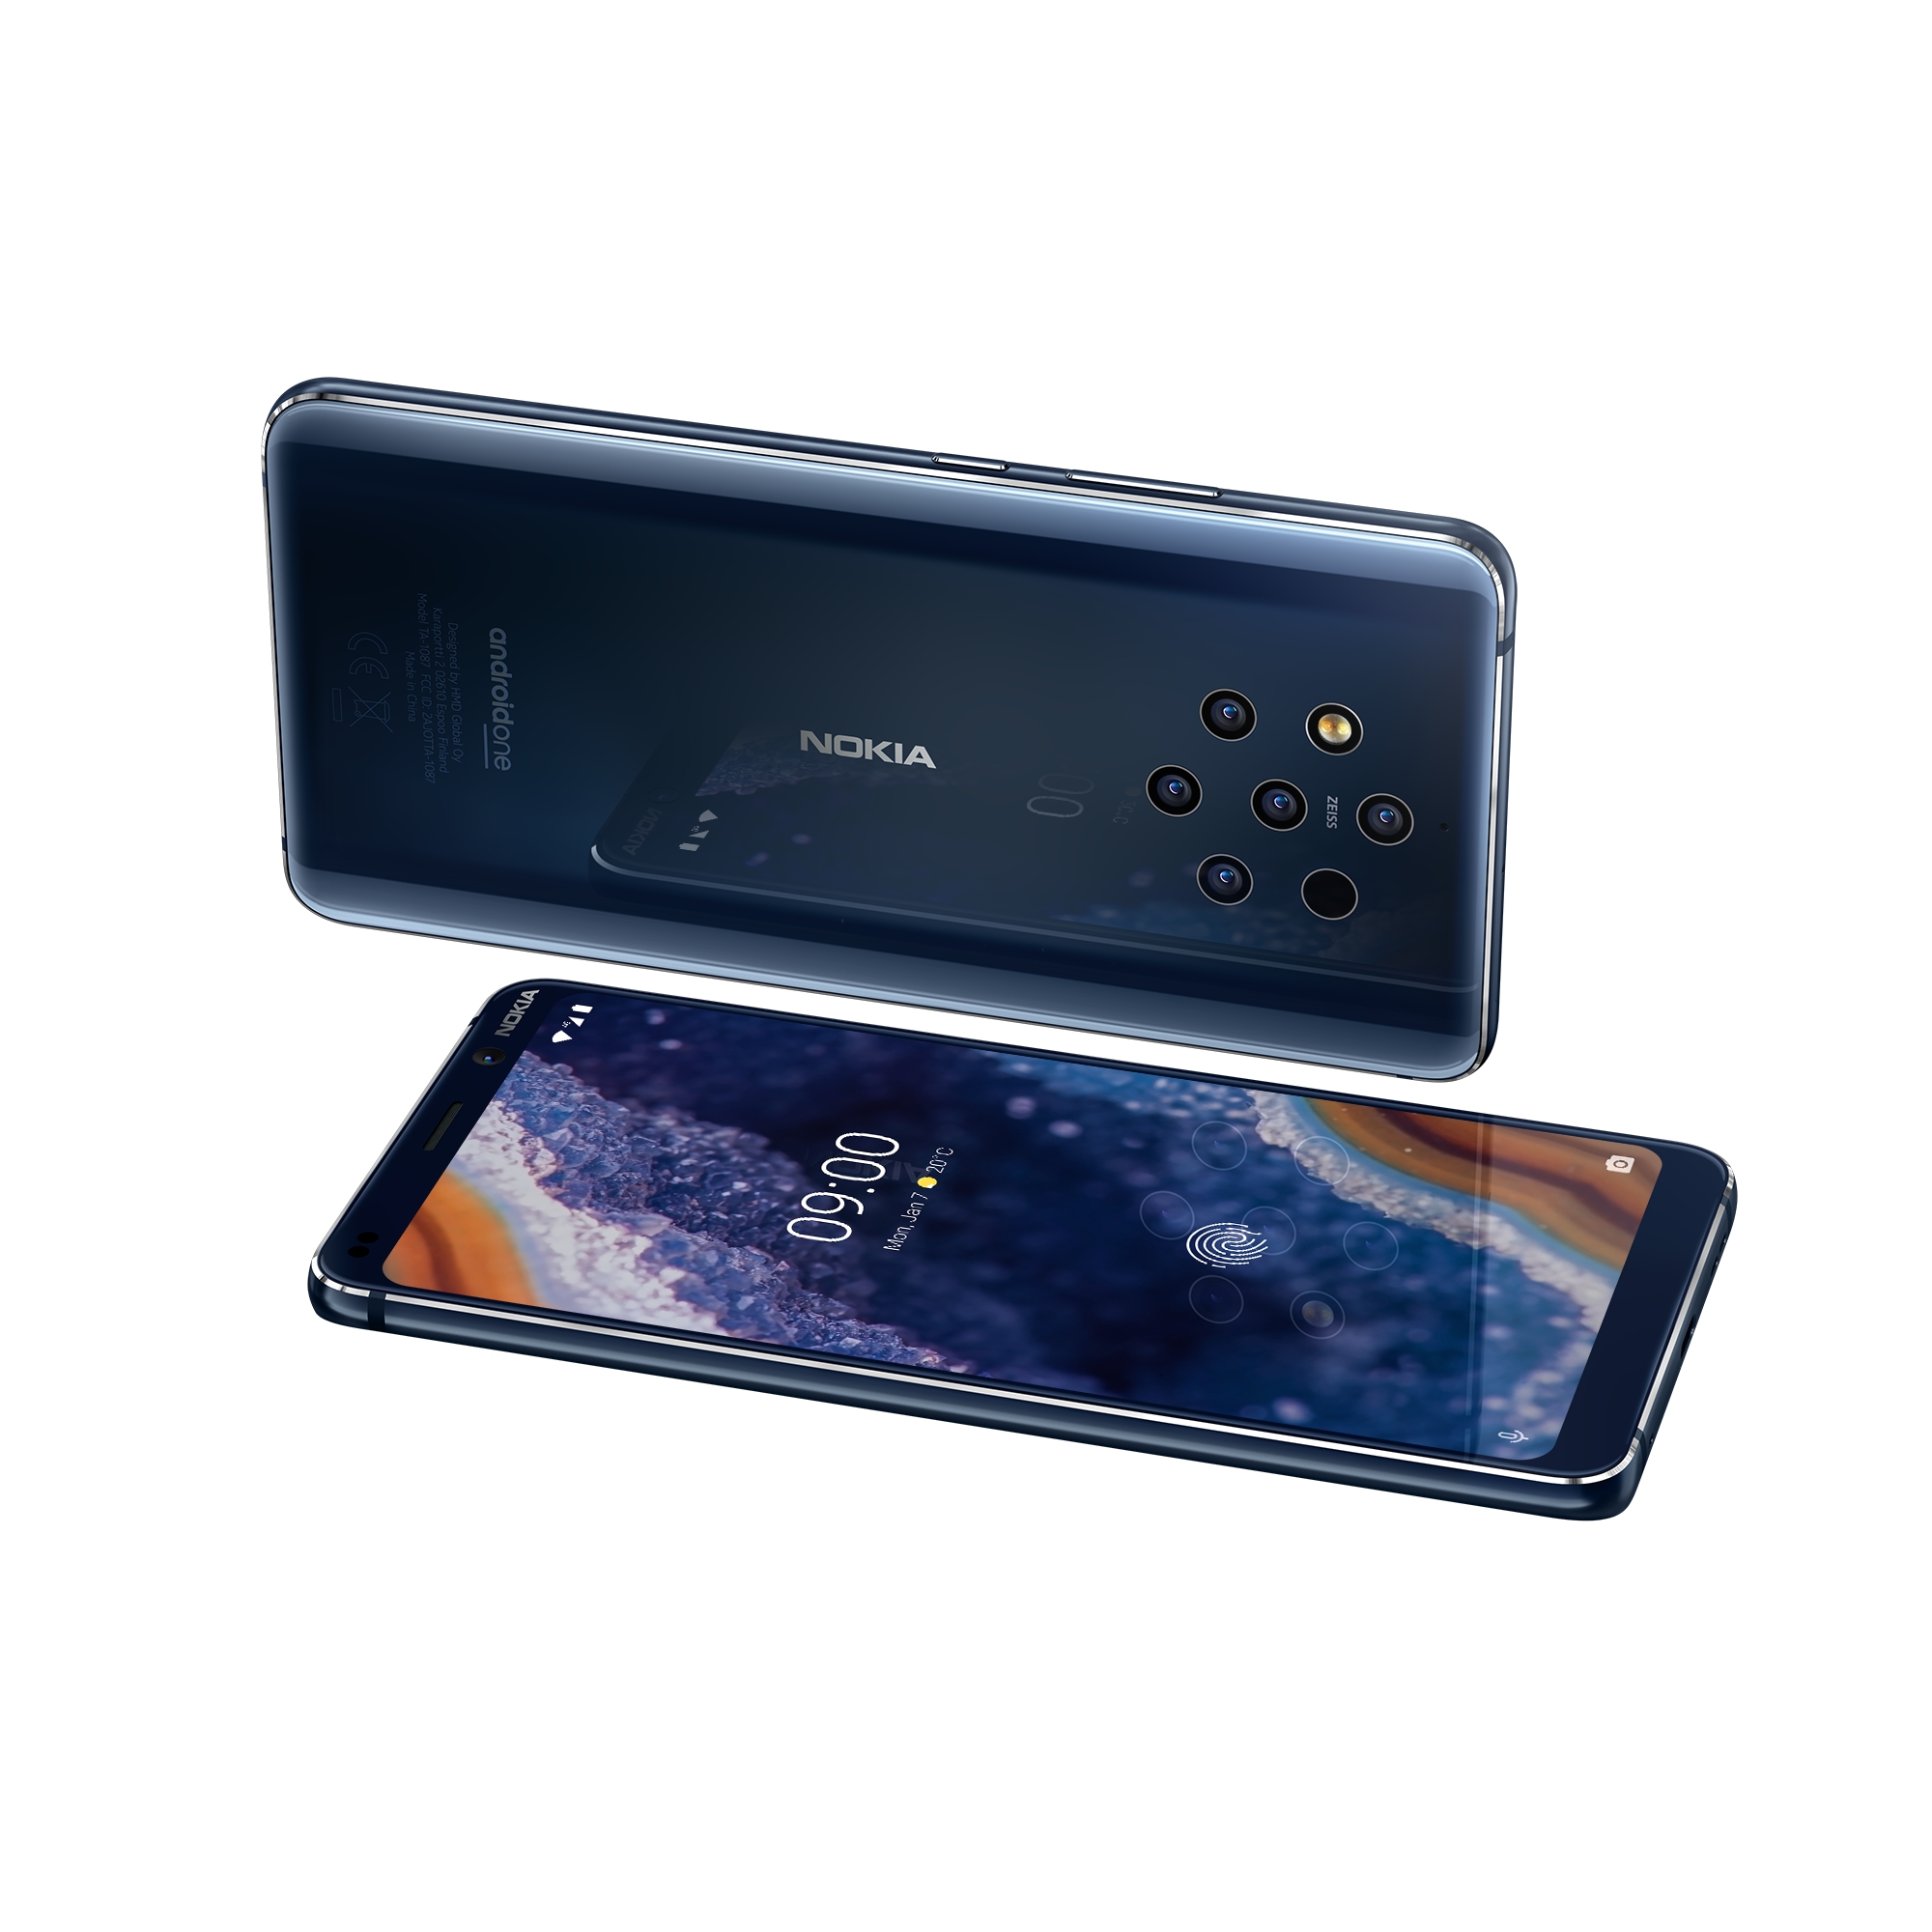 Dette er Nokias nye mobil med fem kameraer - vi har prisene på alle produktene